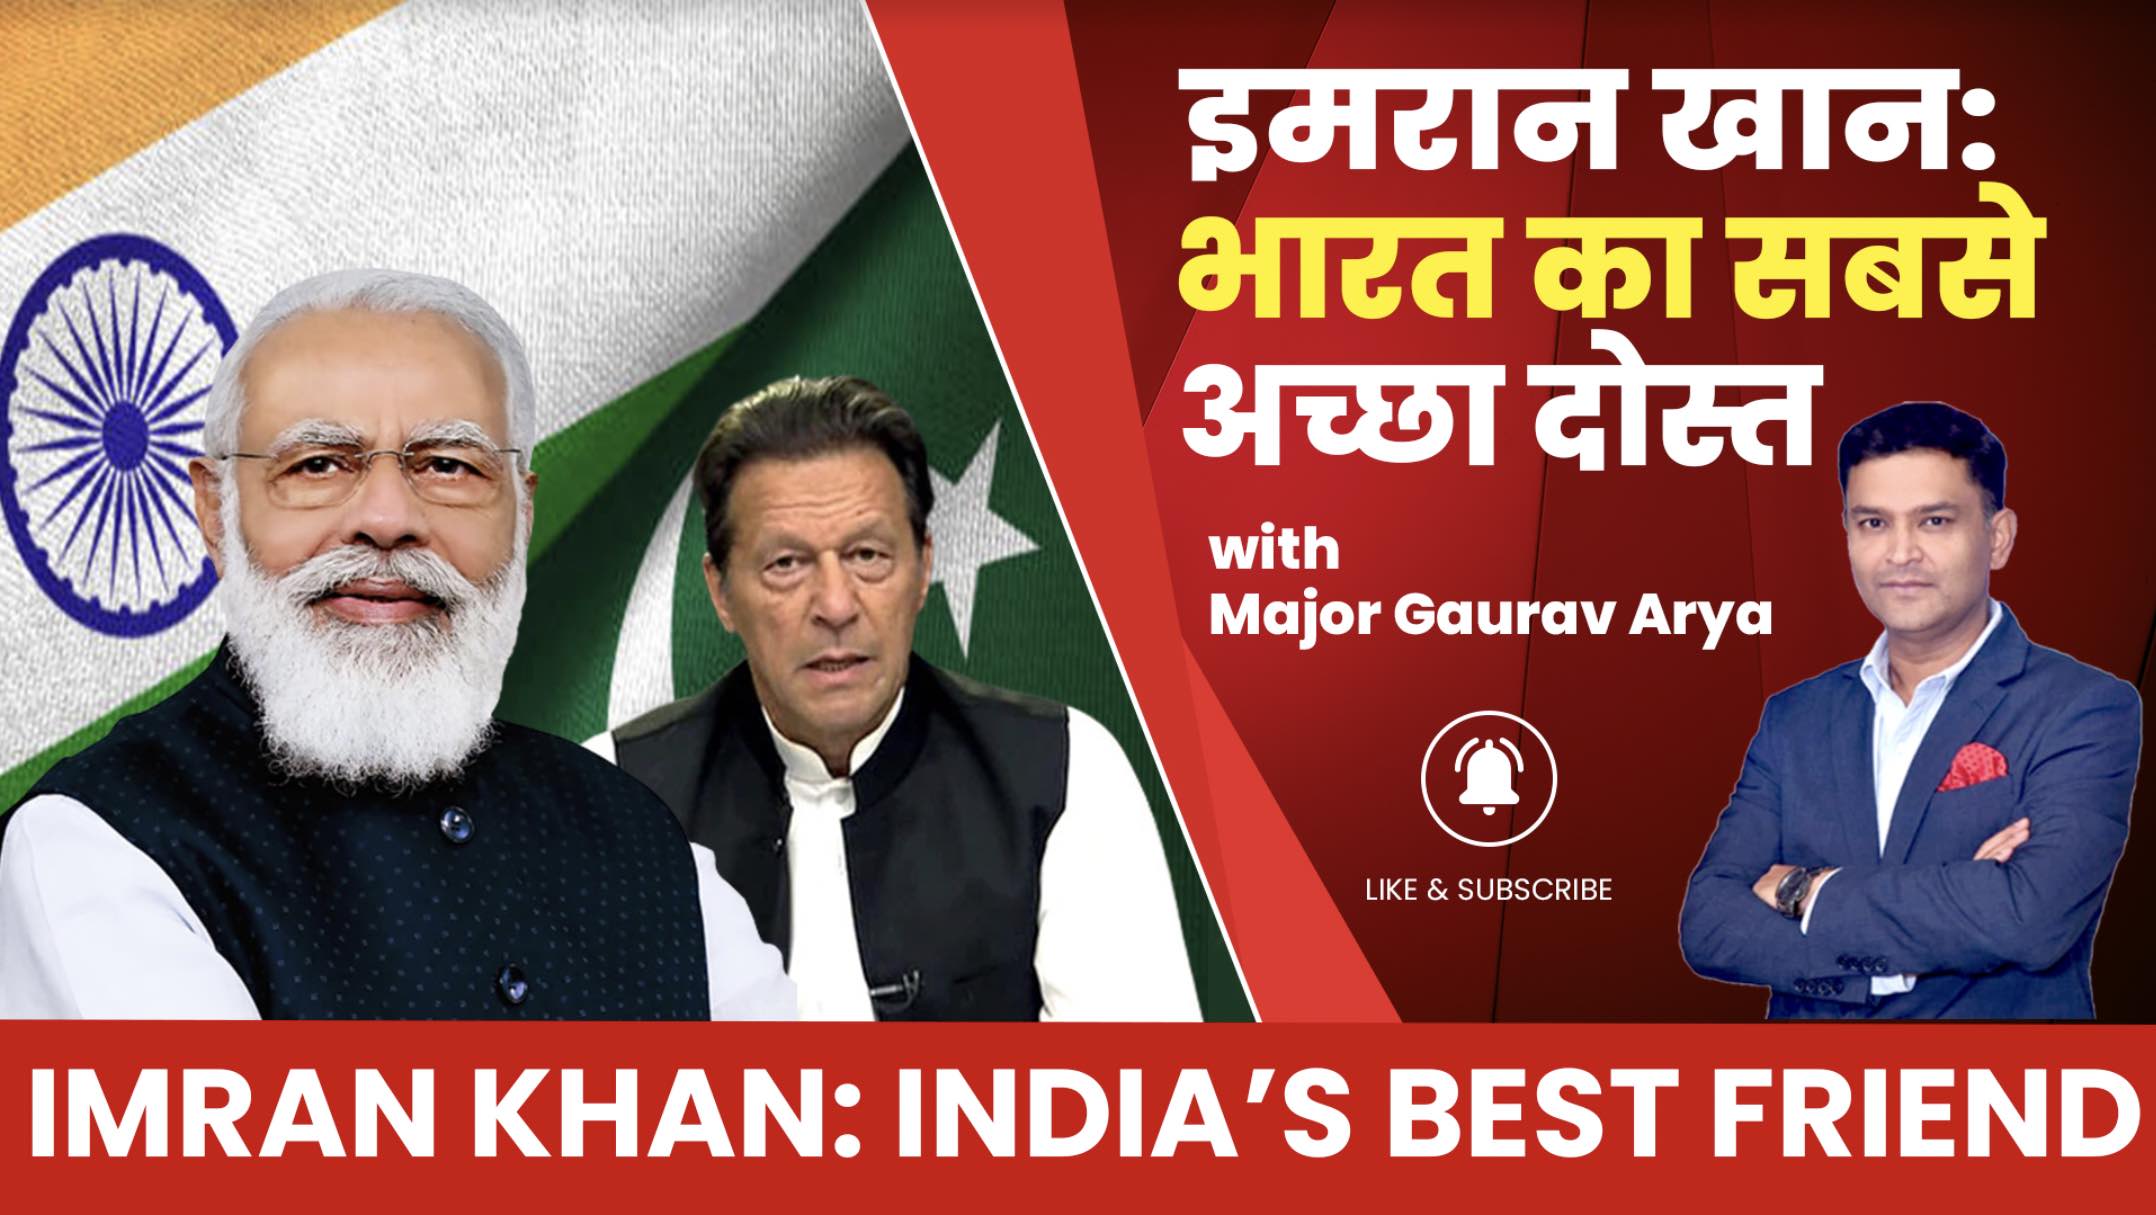 भारत का सबसे अच्छा दोस्त इमरान खान